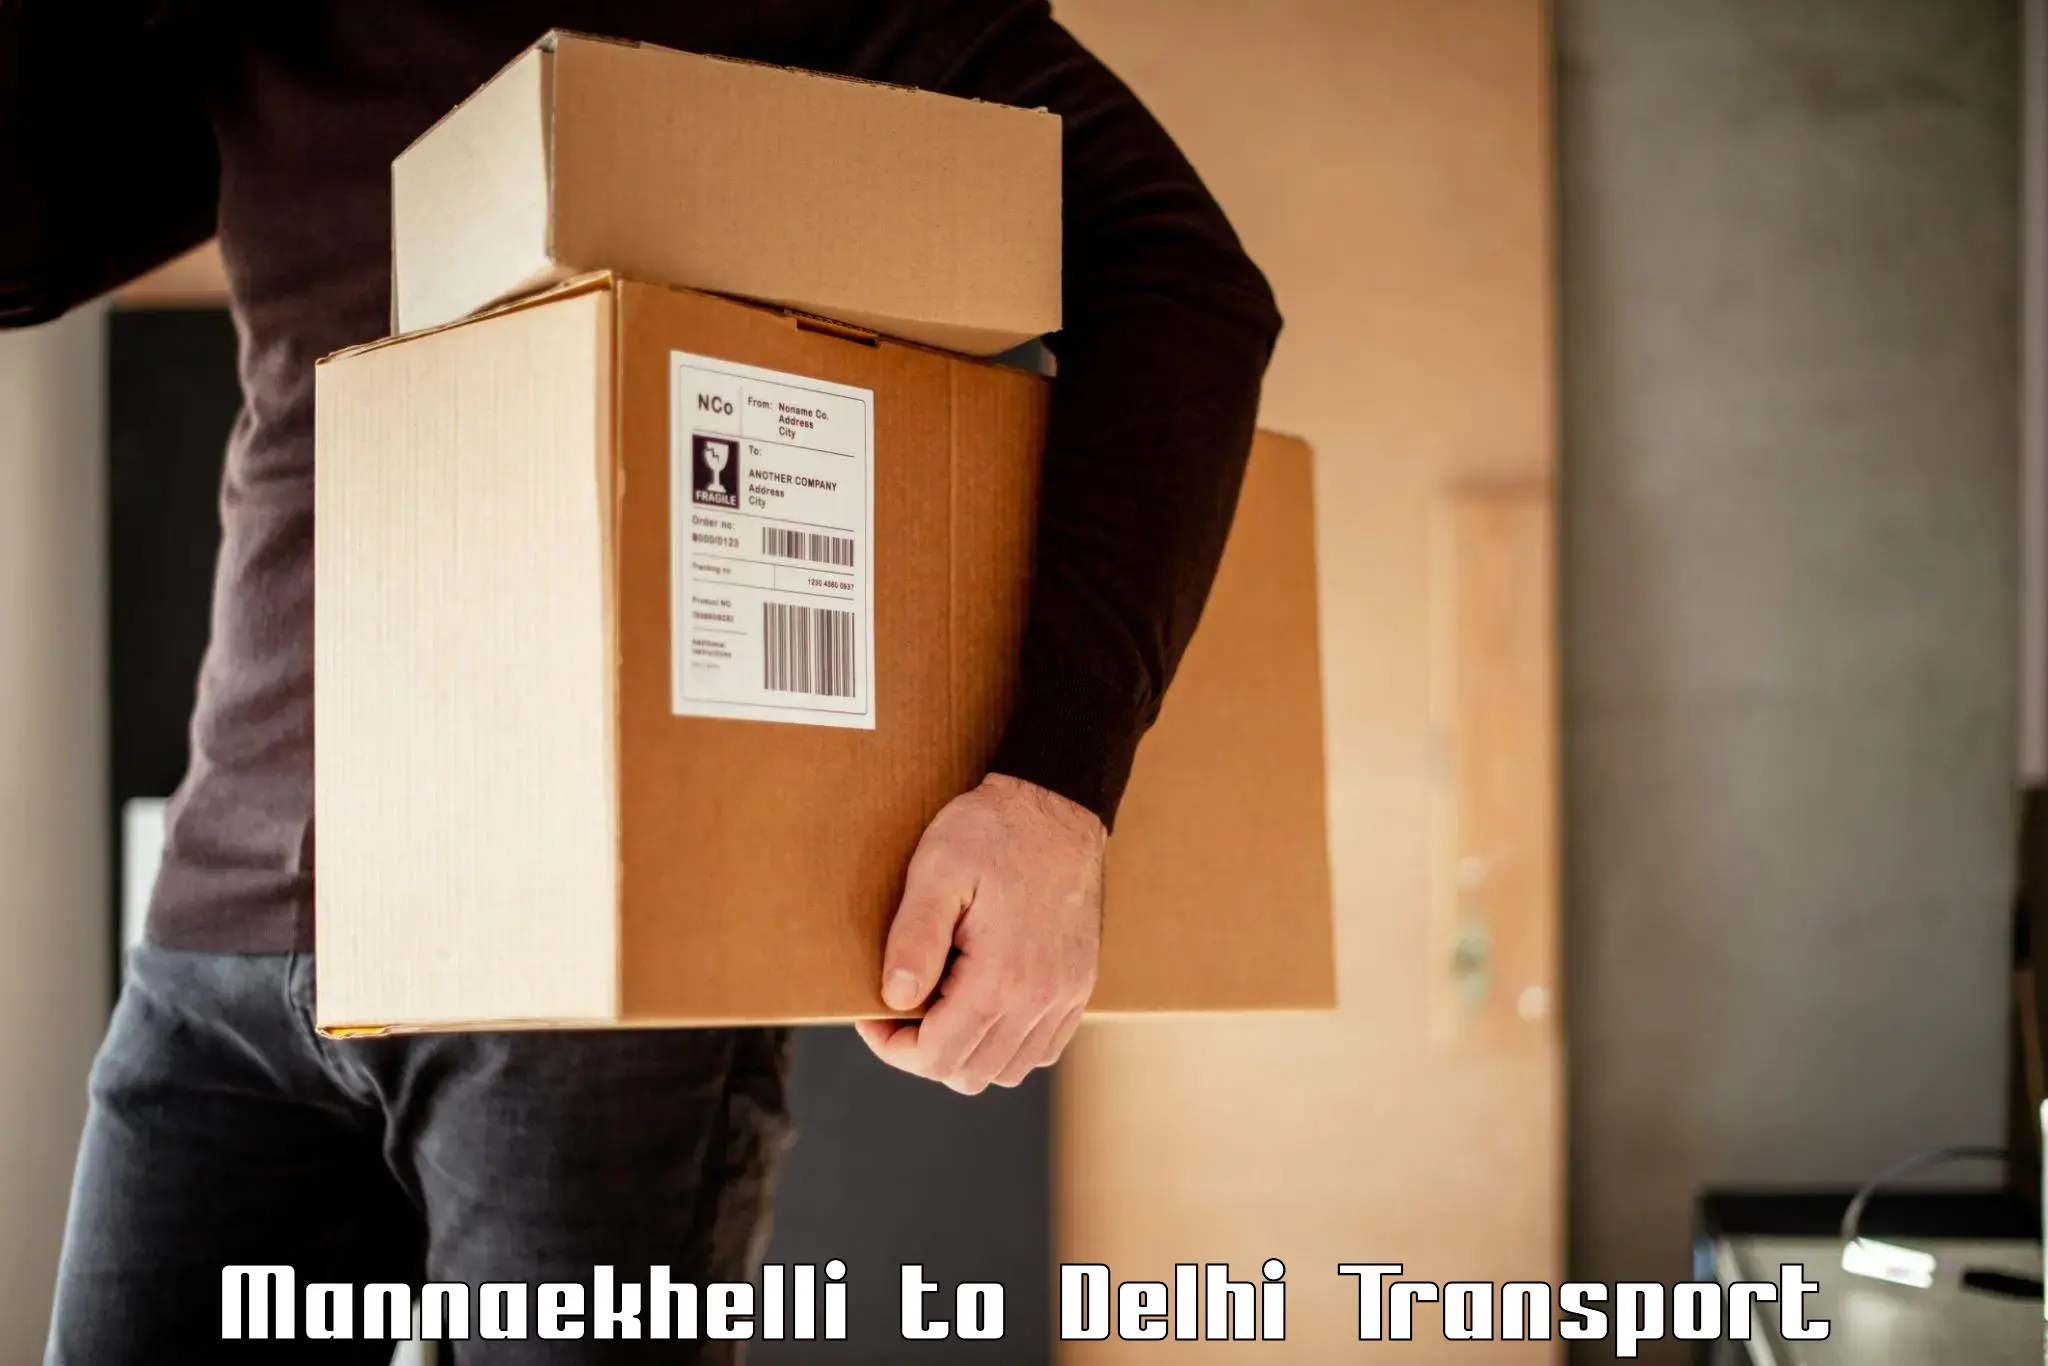 Luggage transport services Mannaekhelli to Jamia Millia Islamia New Delhi